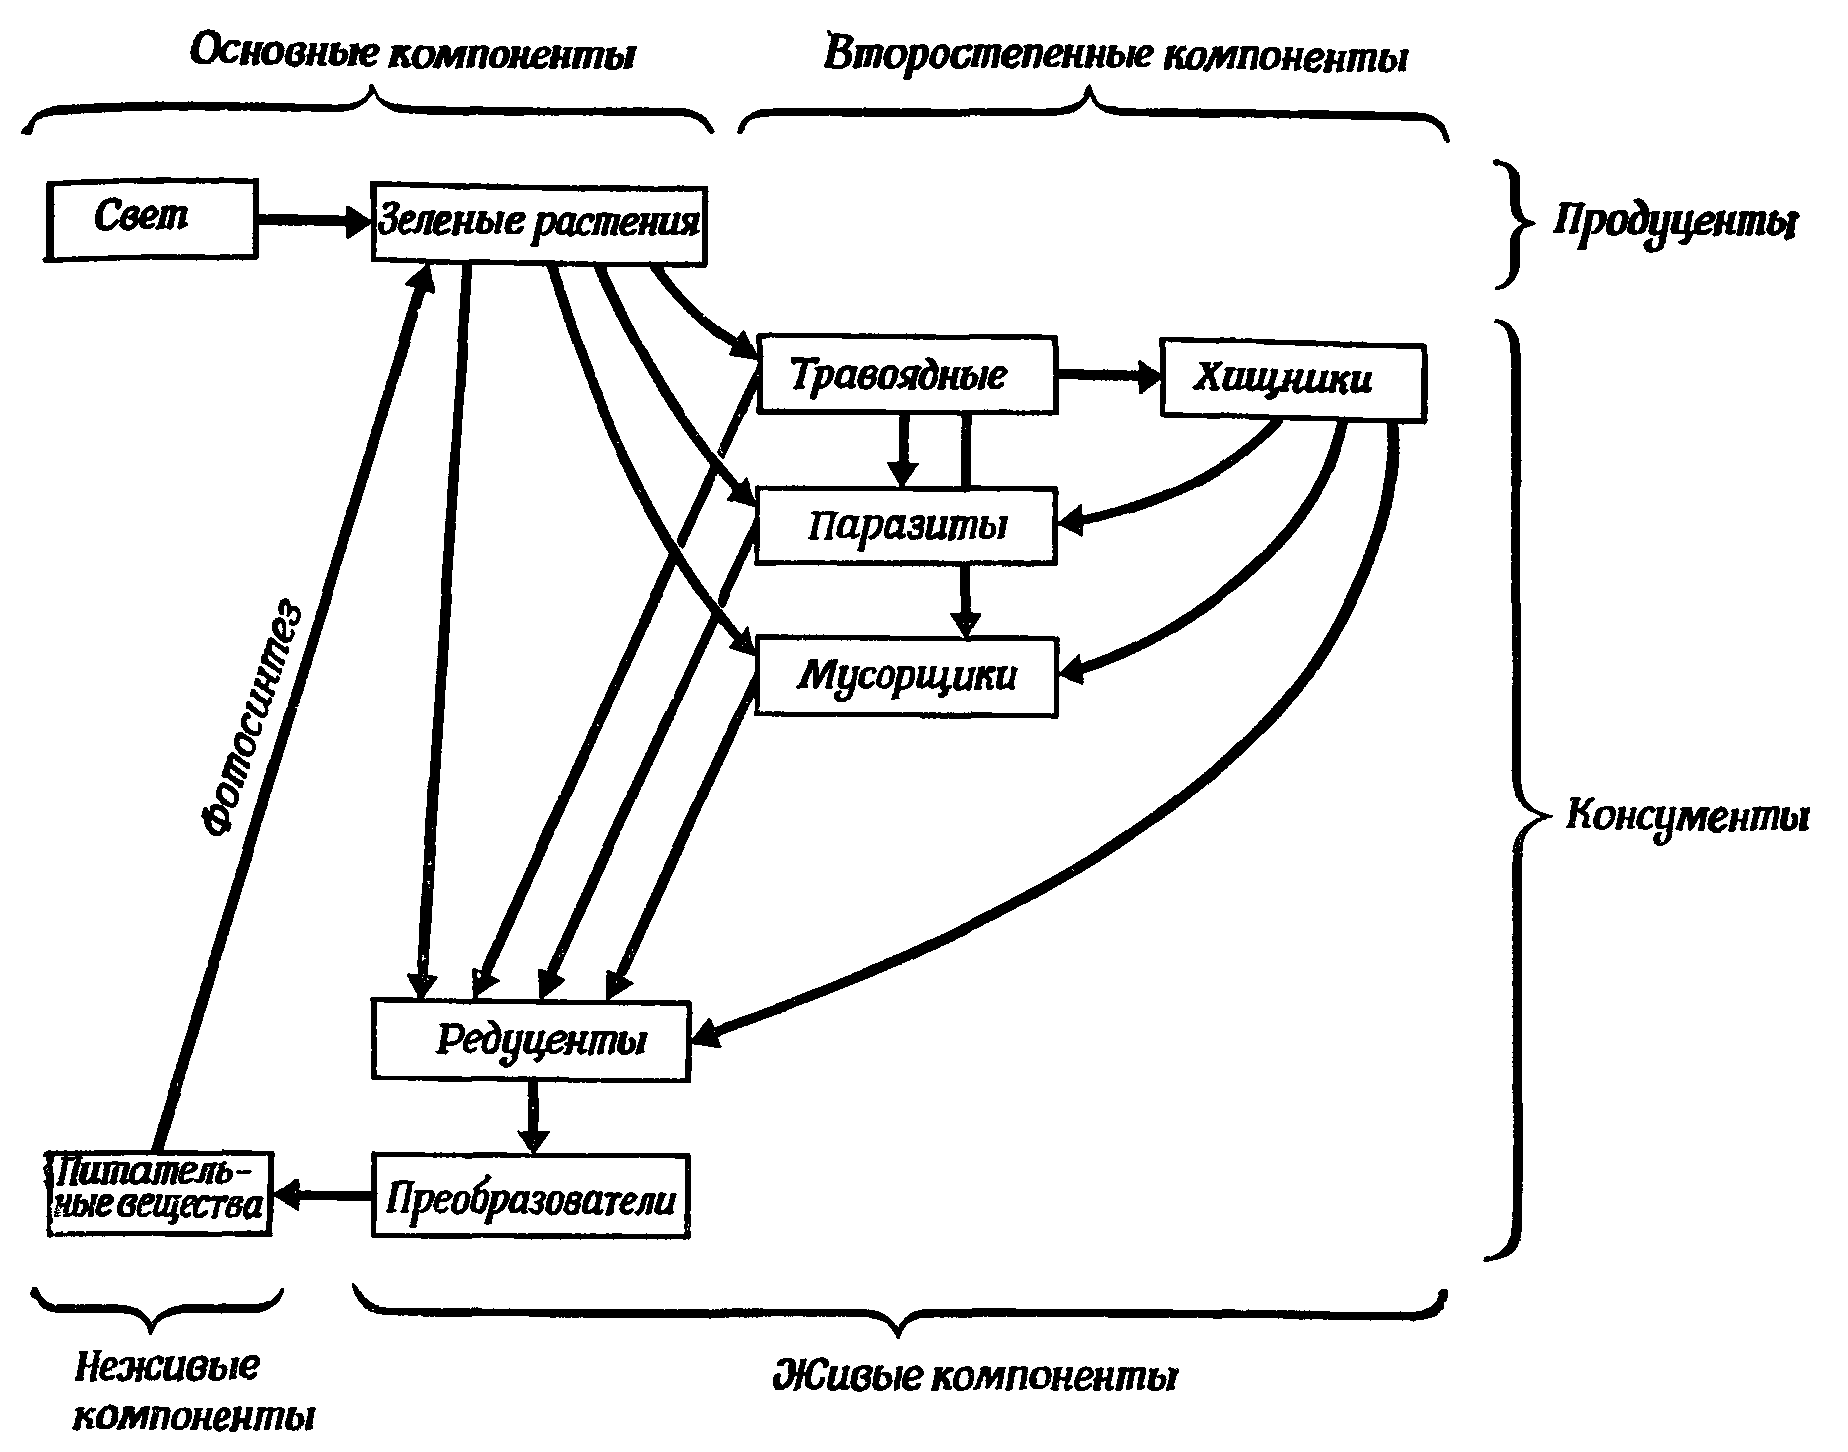 Фиг. 77. Схема потоков вещества через типичную экосистему (из [28], с изменениями)